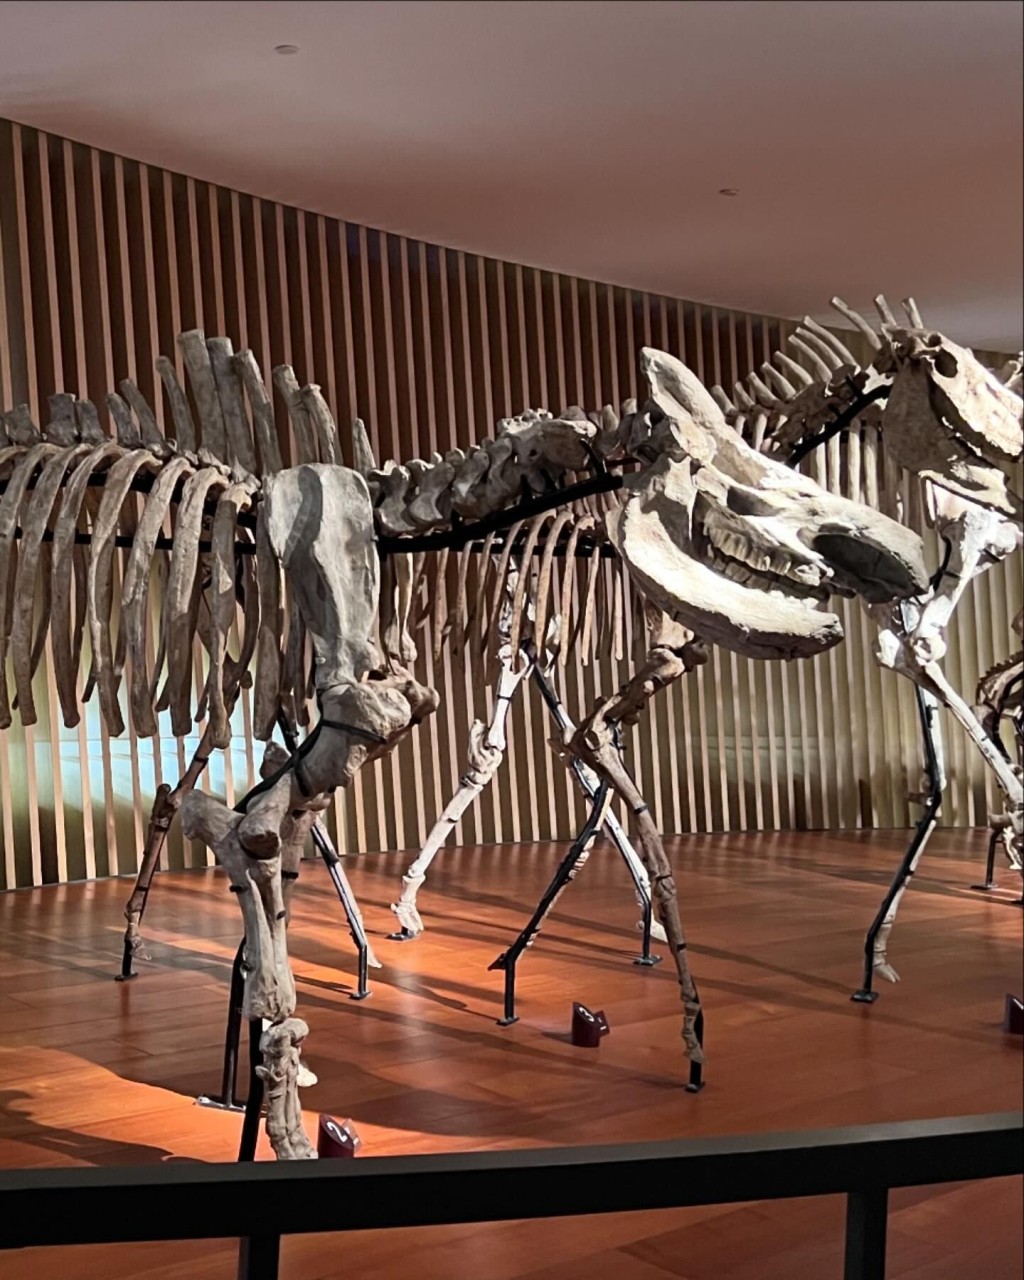 上海自然博物館有很多恐龍模型和化石供觀賞。